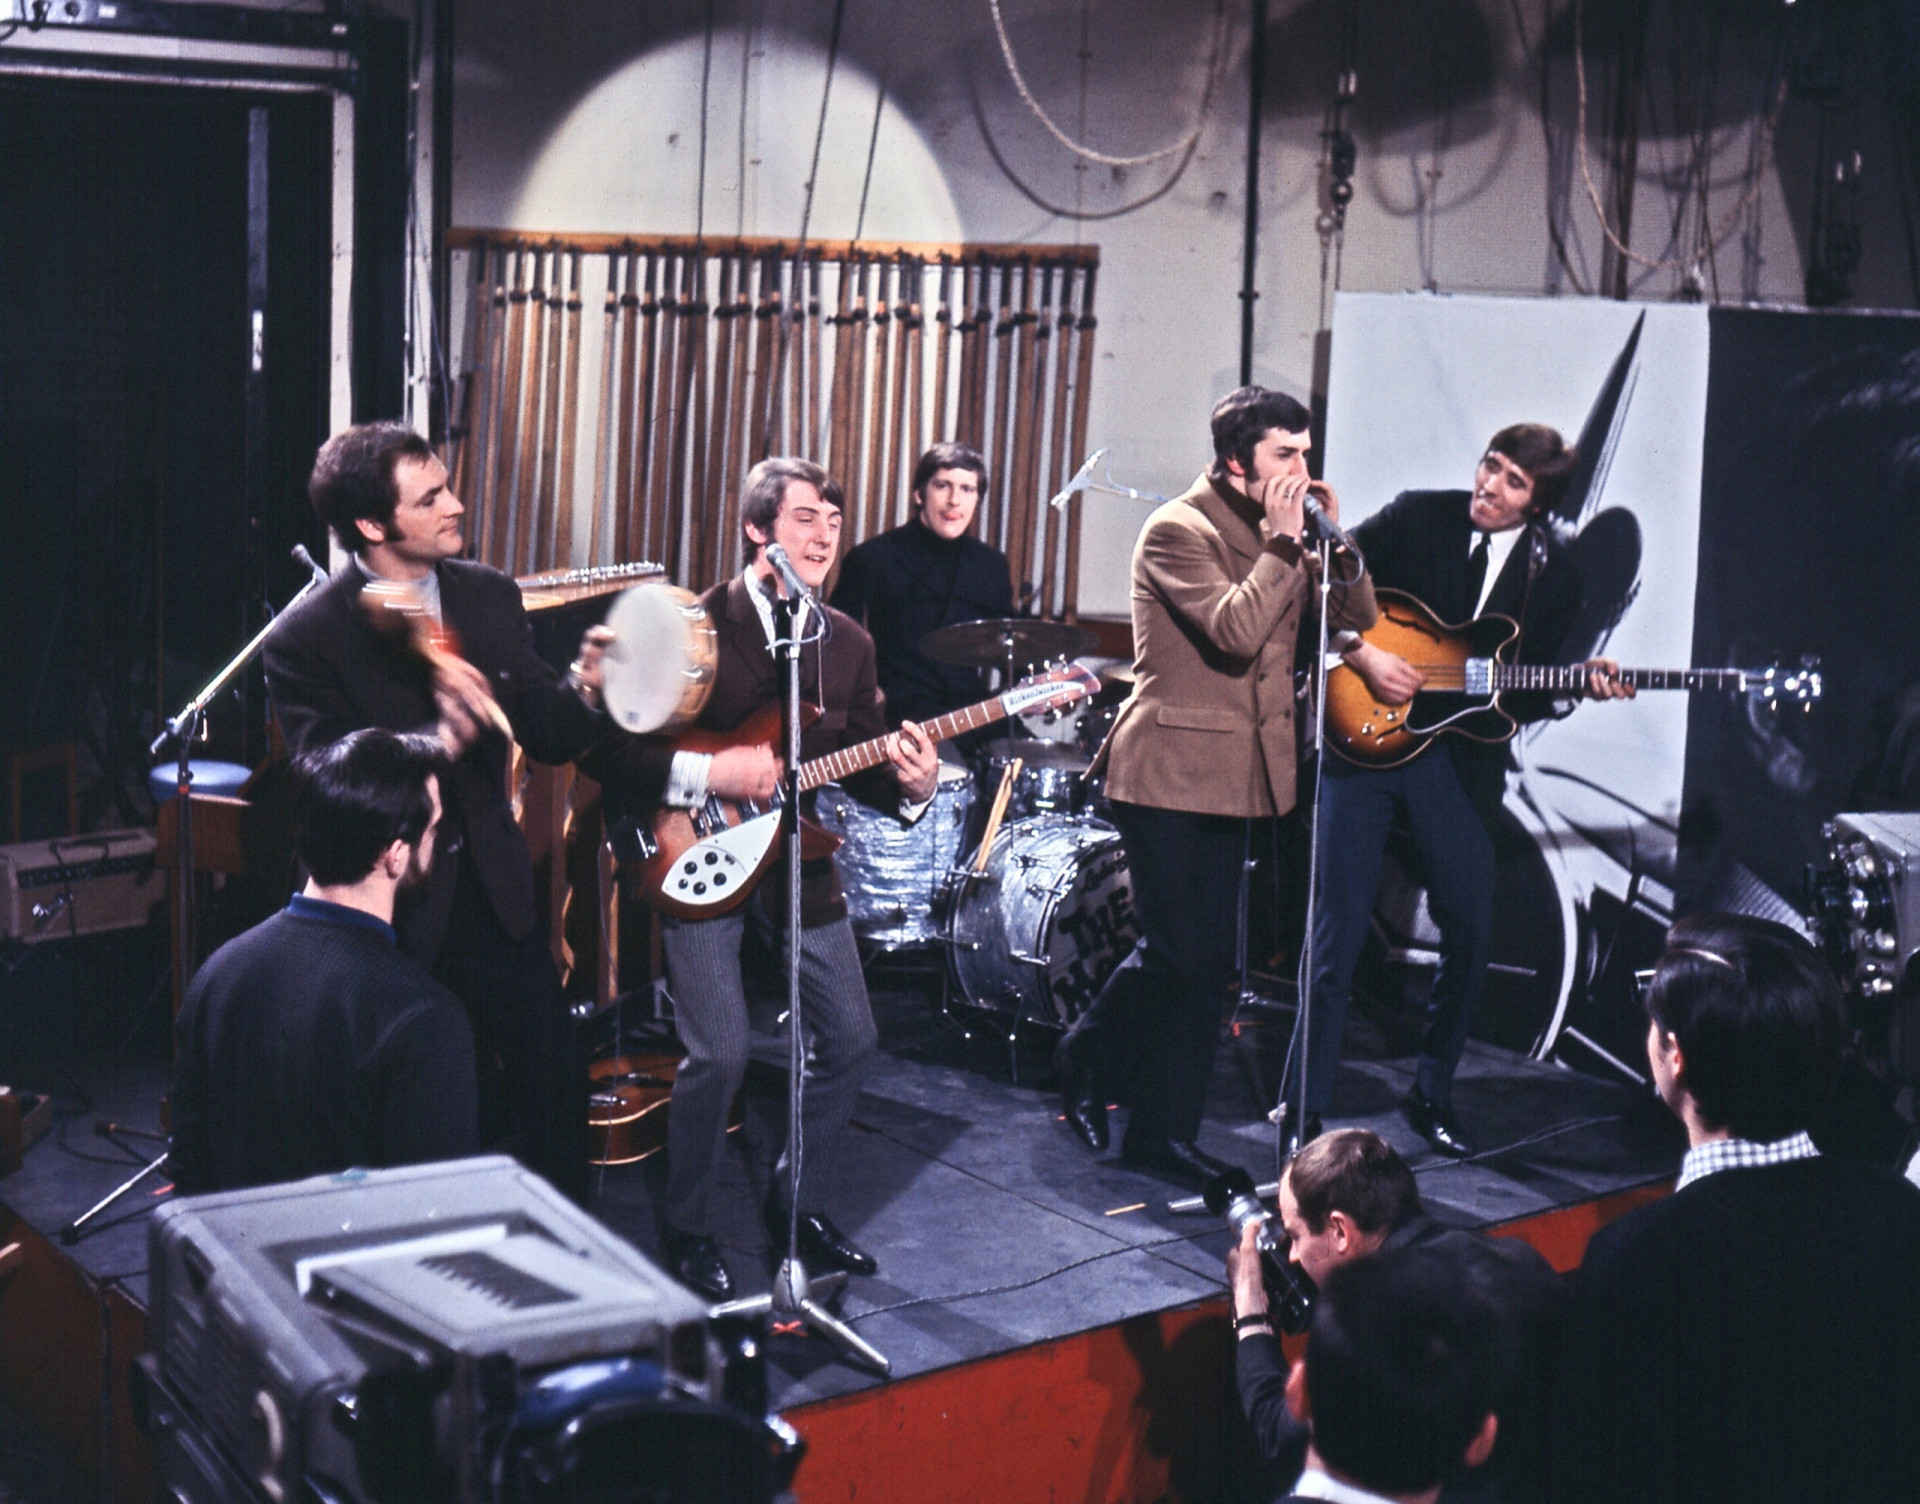 <p>Der Progressive Rock oder Progrock entwickelte sich 1967 aus der britischen Psychedelic-Szene heraus. Es war eine Zeit der musikalischen Erkundung, die durch klassische Einflüsse und symphonischen Rock gekennzeichnet war. Zu den frühen Pionieren gehörten die Moody Blues, deren bahnbrechendes Album "Days of Future Passed" von 1967 als eines der ersten Beispiele des <a href="https://de.starsinsider.com/musik/518956/die-beliebtesten-musikgenres-der-welt" rel="noopener">Genres</a> gilt.</p>